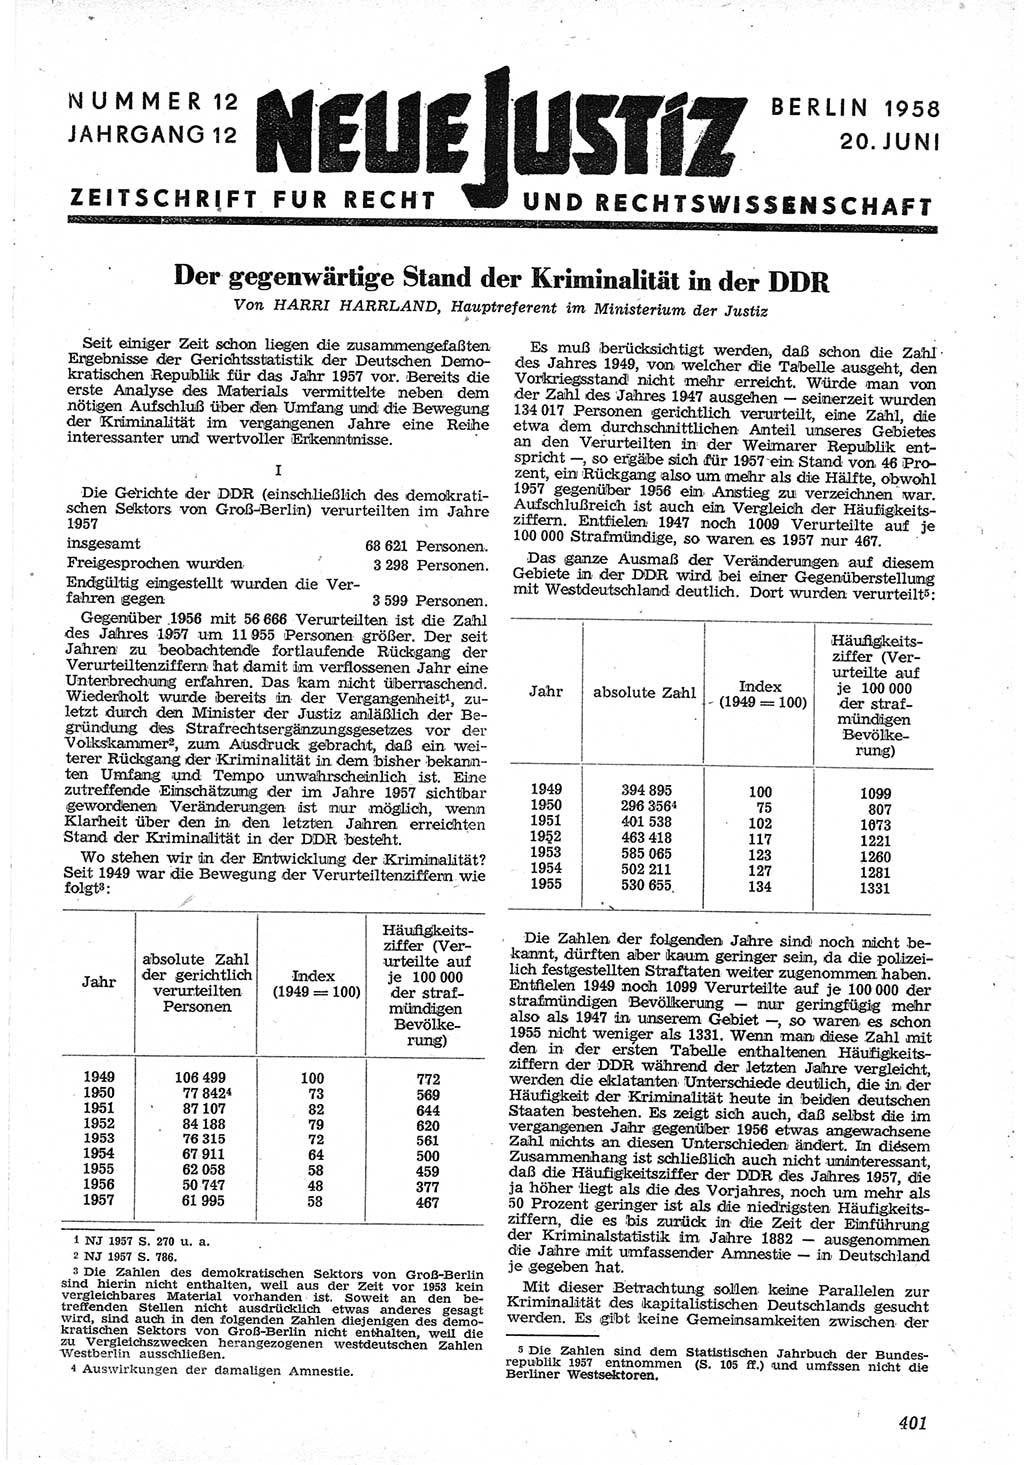 Neue Justiz (NJ), Zeitschrift für Recht und Rechtswissenschaft [Deutsche Demokratische Republik (DDR)], 12. Jahrgang 1958, Seite 401 (NJ DDR 1958, S. 401)